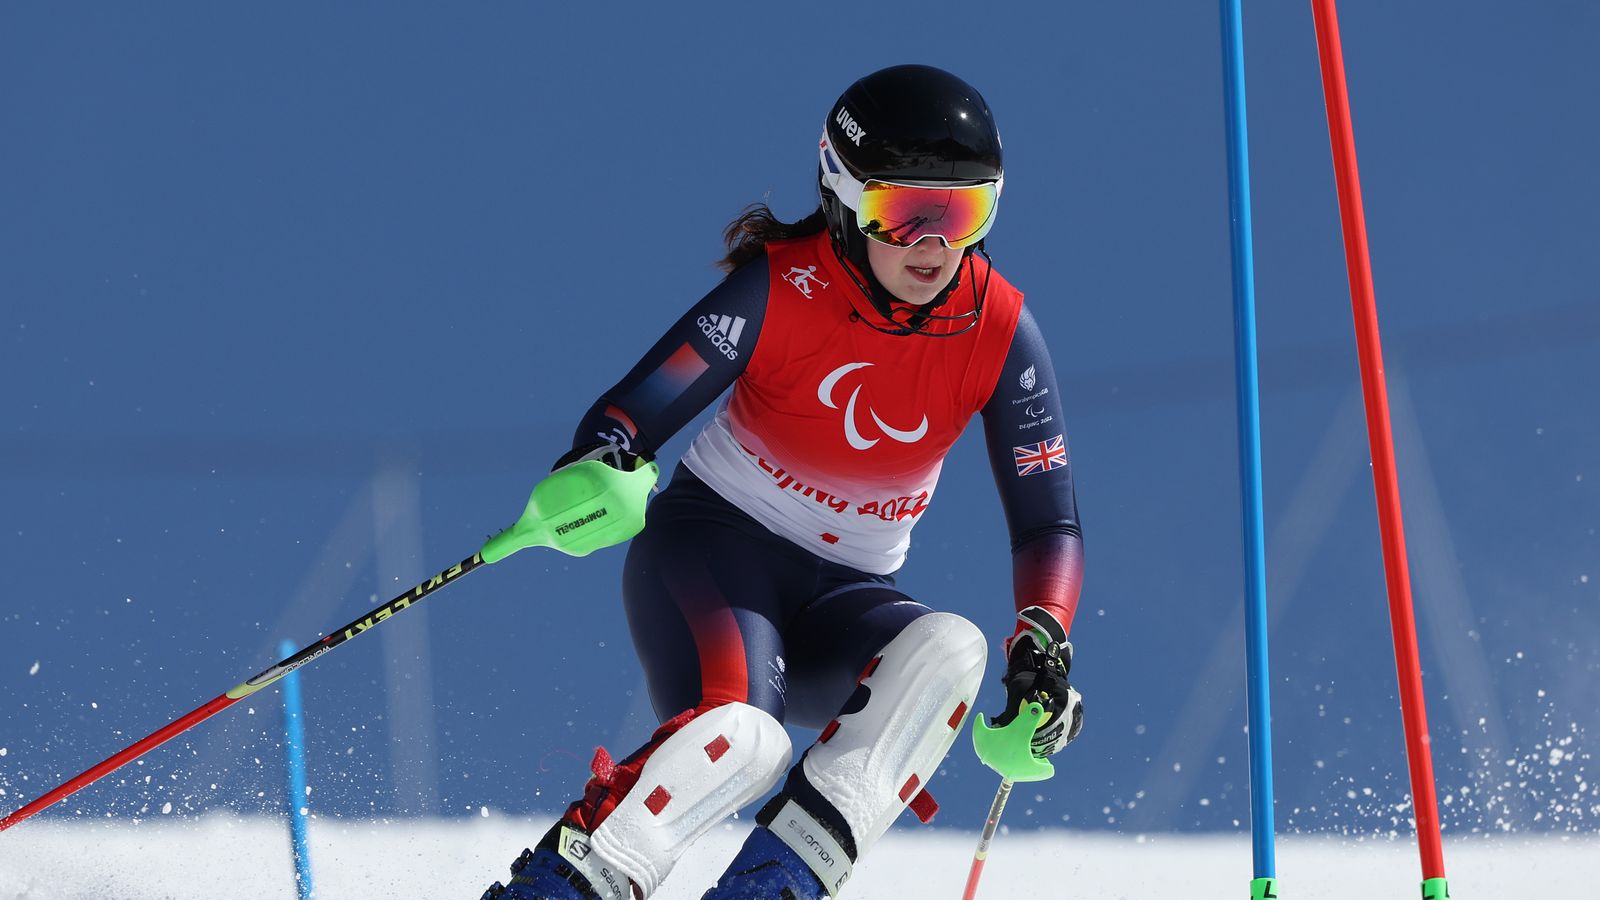 Zimné paralympijské hry 2022: Británia získala ďalšie dve medaily v Pekingu, zatiaľ čo Mina Fitzpatrick a Neil Simpson získali bronz |  Správy